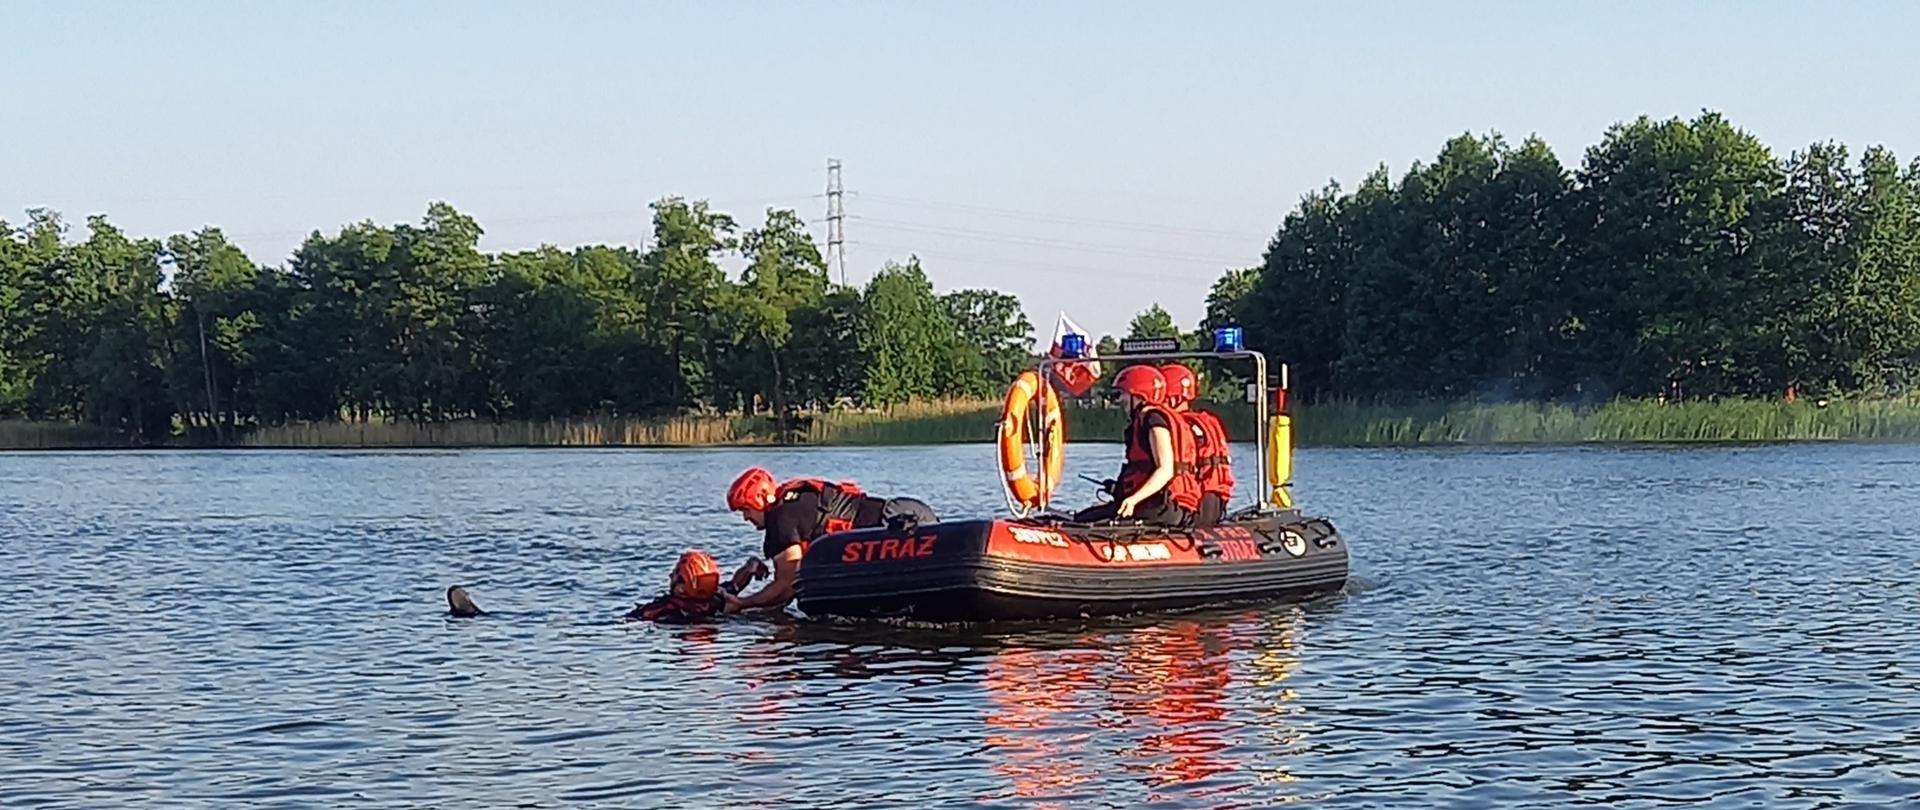 Trzech strażaków zabezpieczonych w kamizelki ratownicze, z łodzi pontonowej podejmuje osobę poszkodowaną z wody.